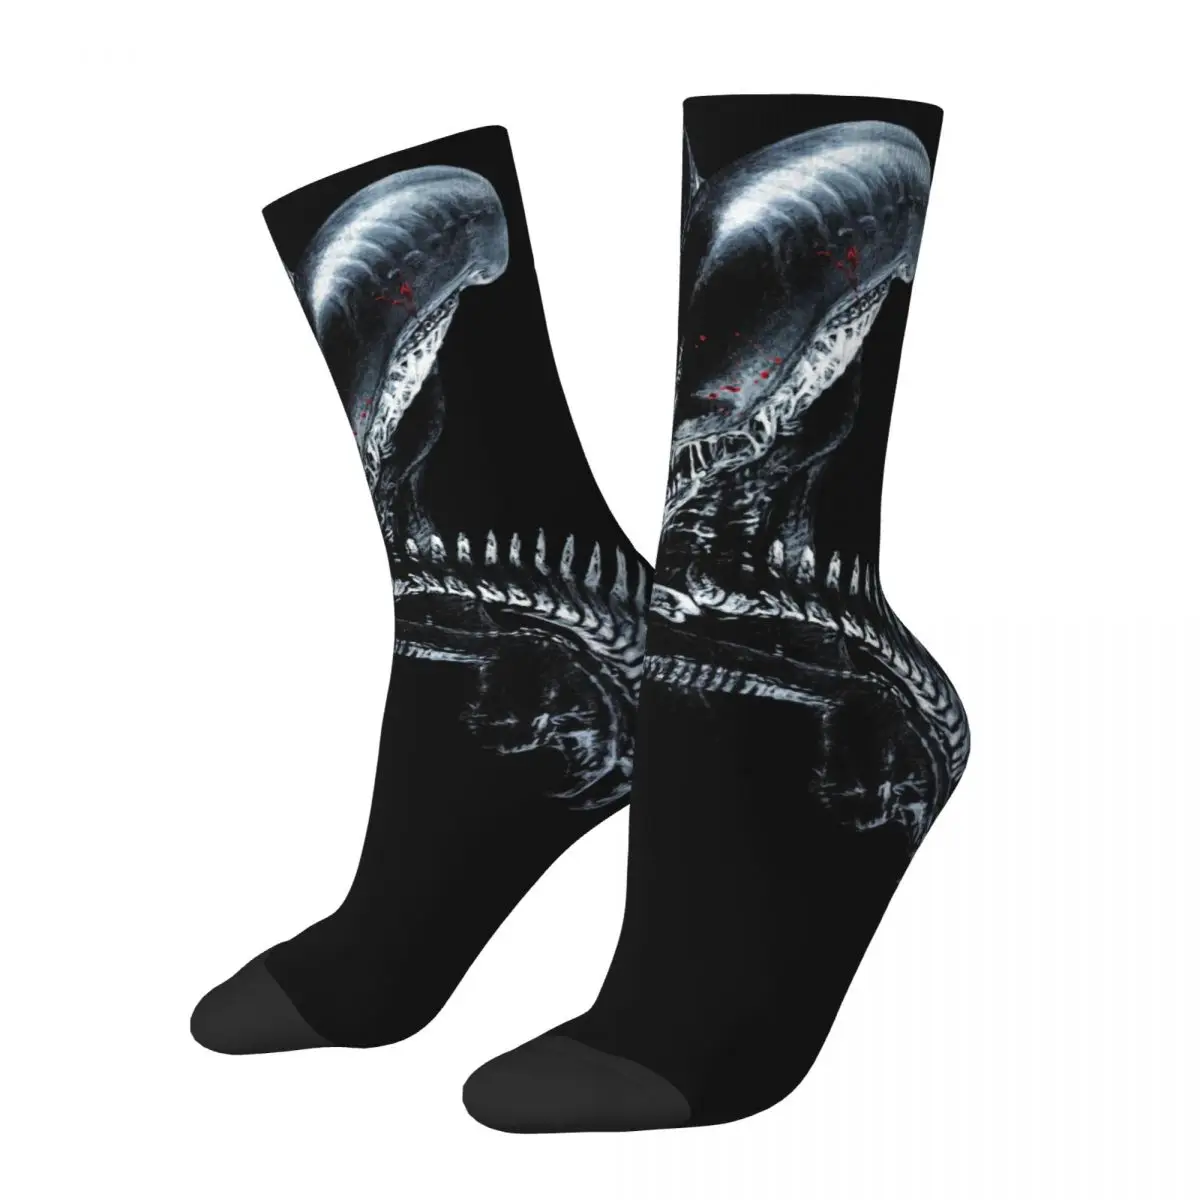 Xenomorph Essential Alien унисекс ветрозащитные носки с 3D принтом счастливые носки уличный стиль сумасшедшие носки xenomorph essential alien унисекс ветрозащитные носки с 3d принтом счастливые носки уличный стиль сумасшедшие носки